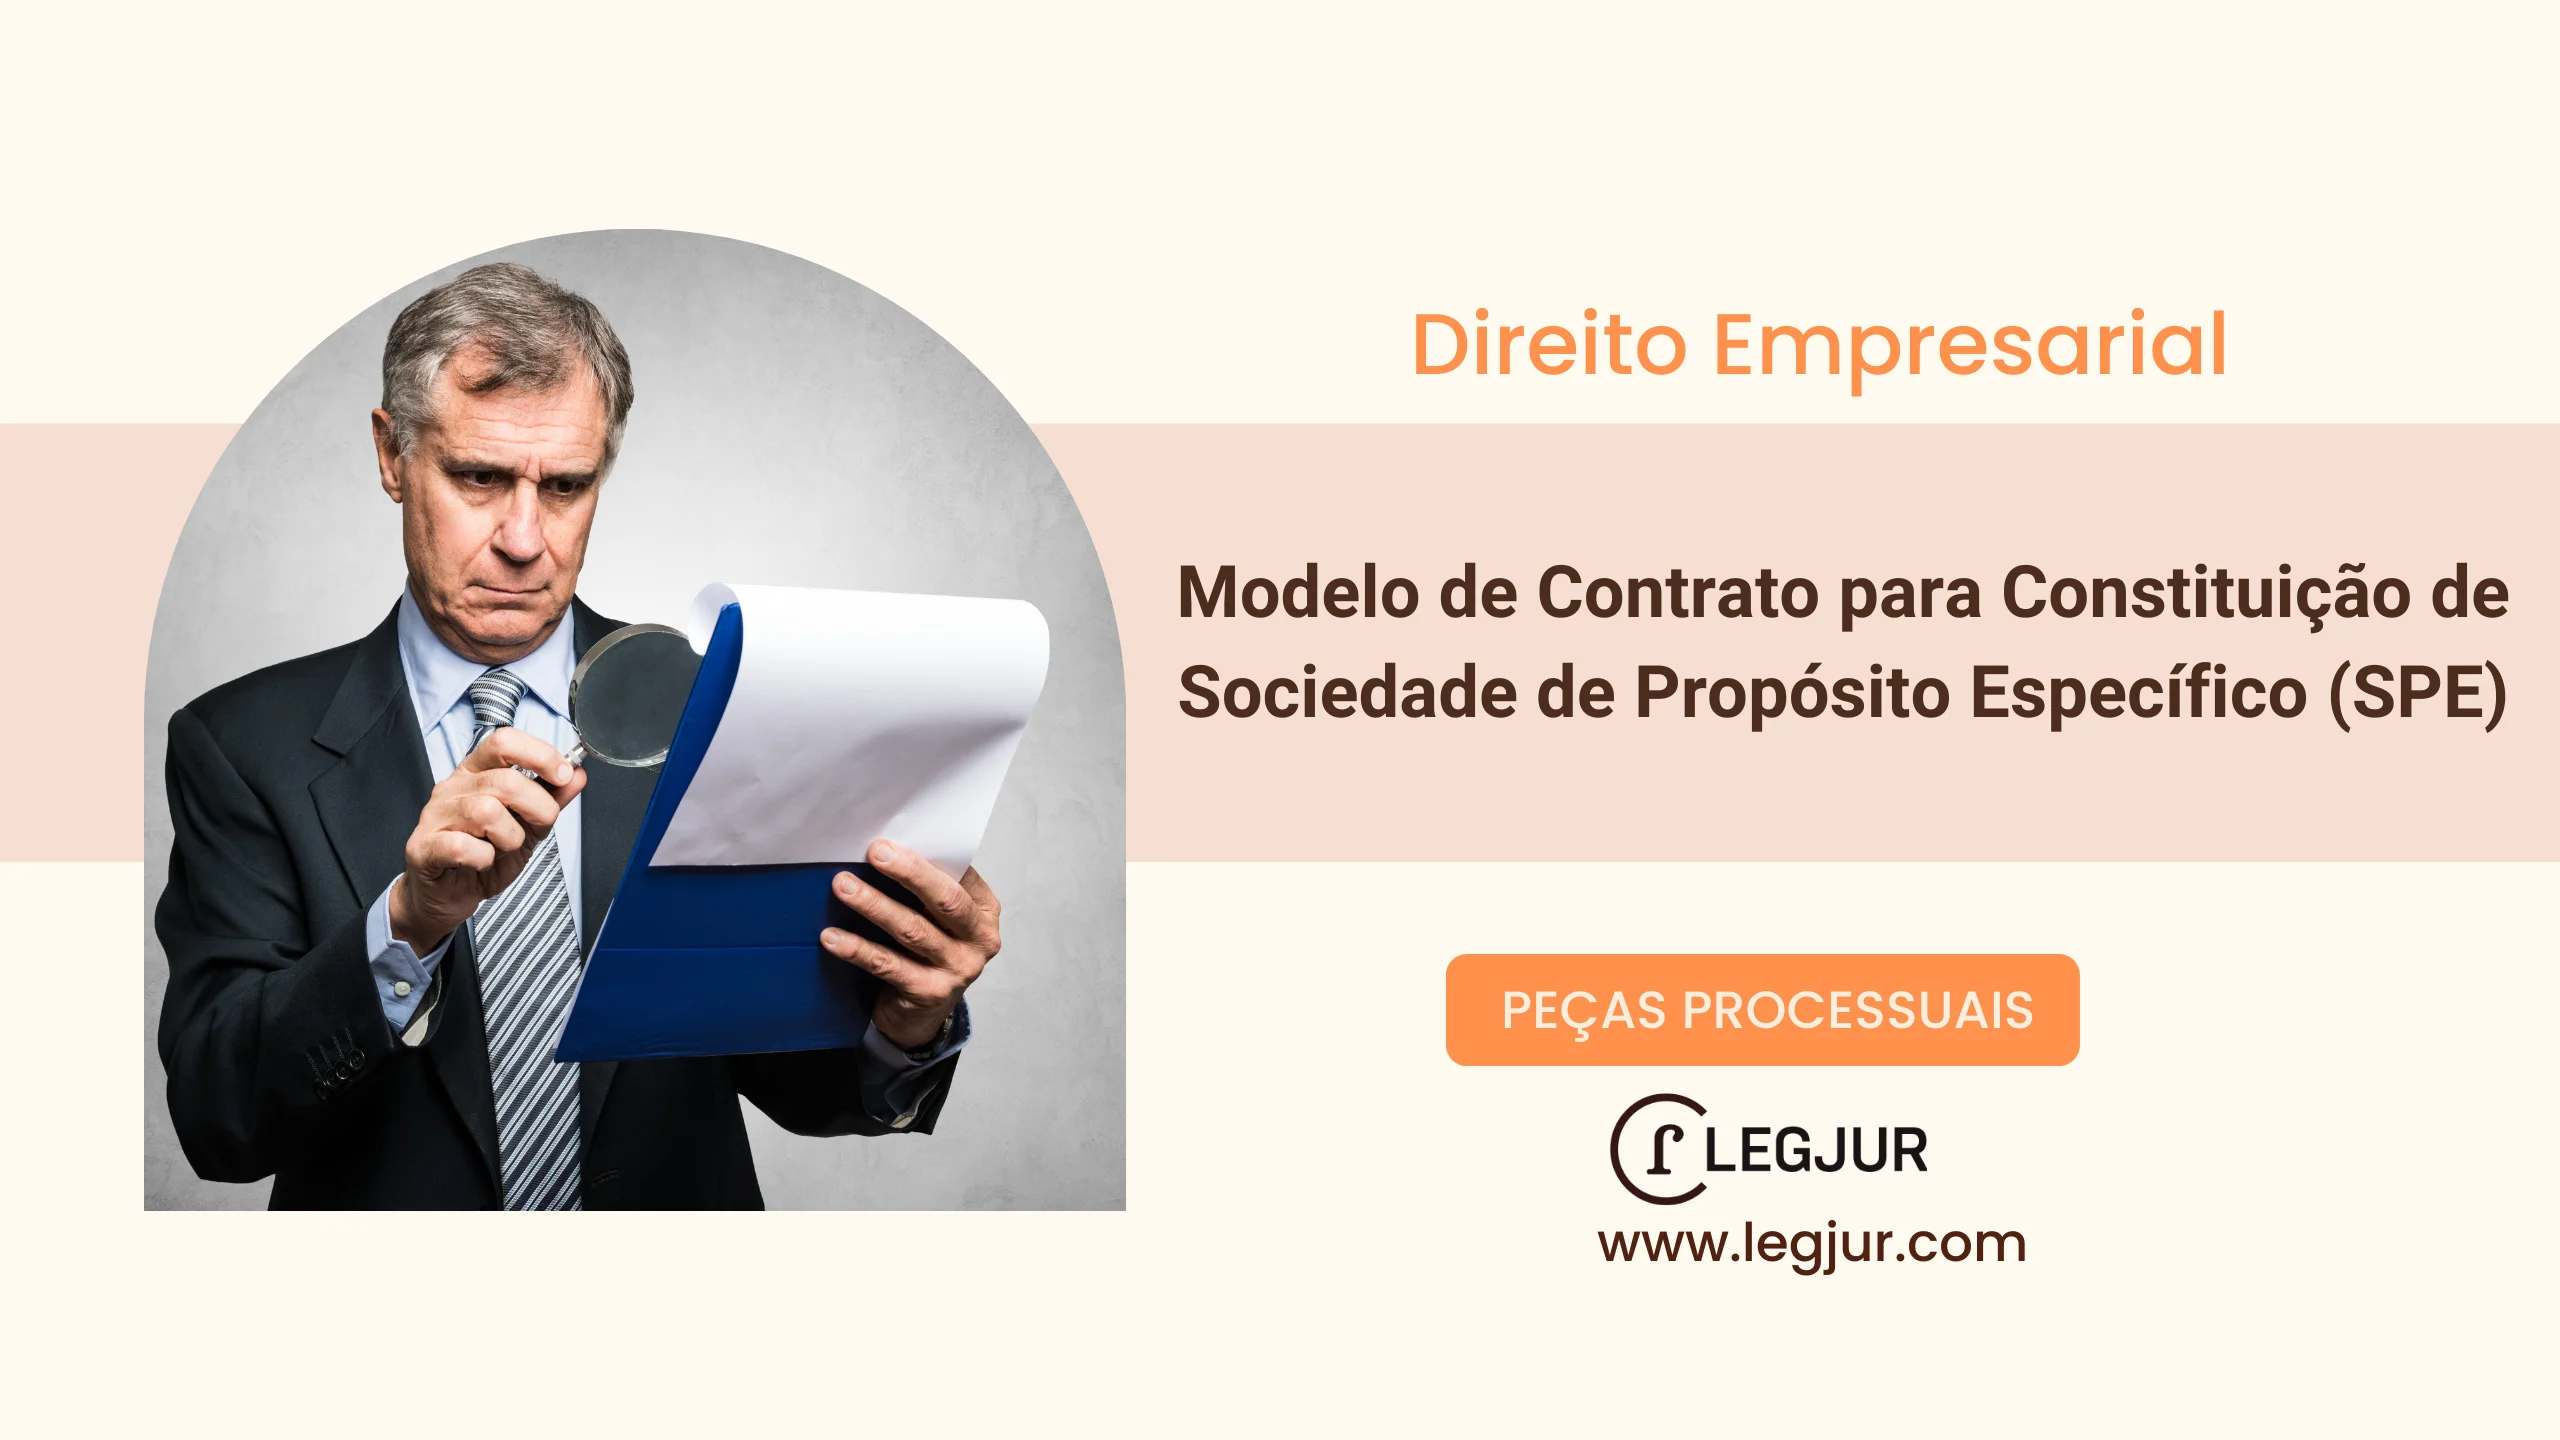 Modelo de Contrato para Constituição de Sociedade de Propósito Específico (SPE)